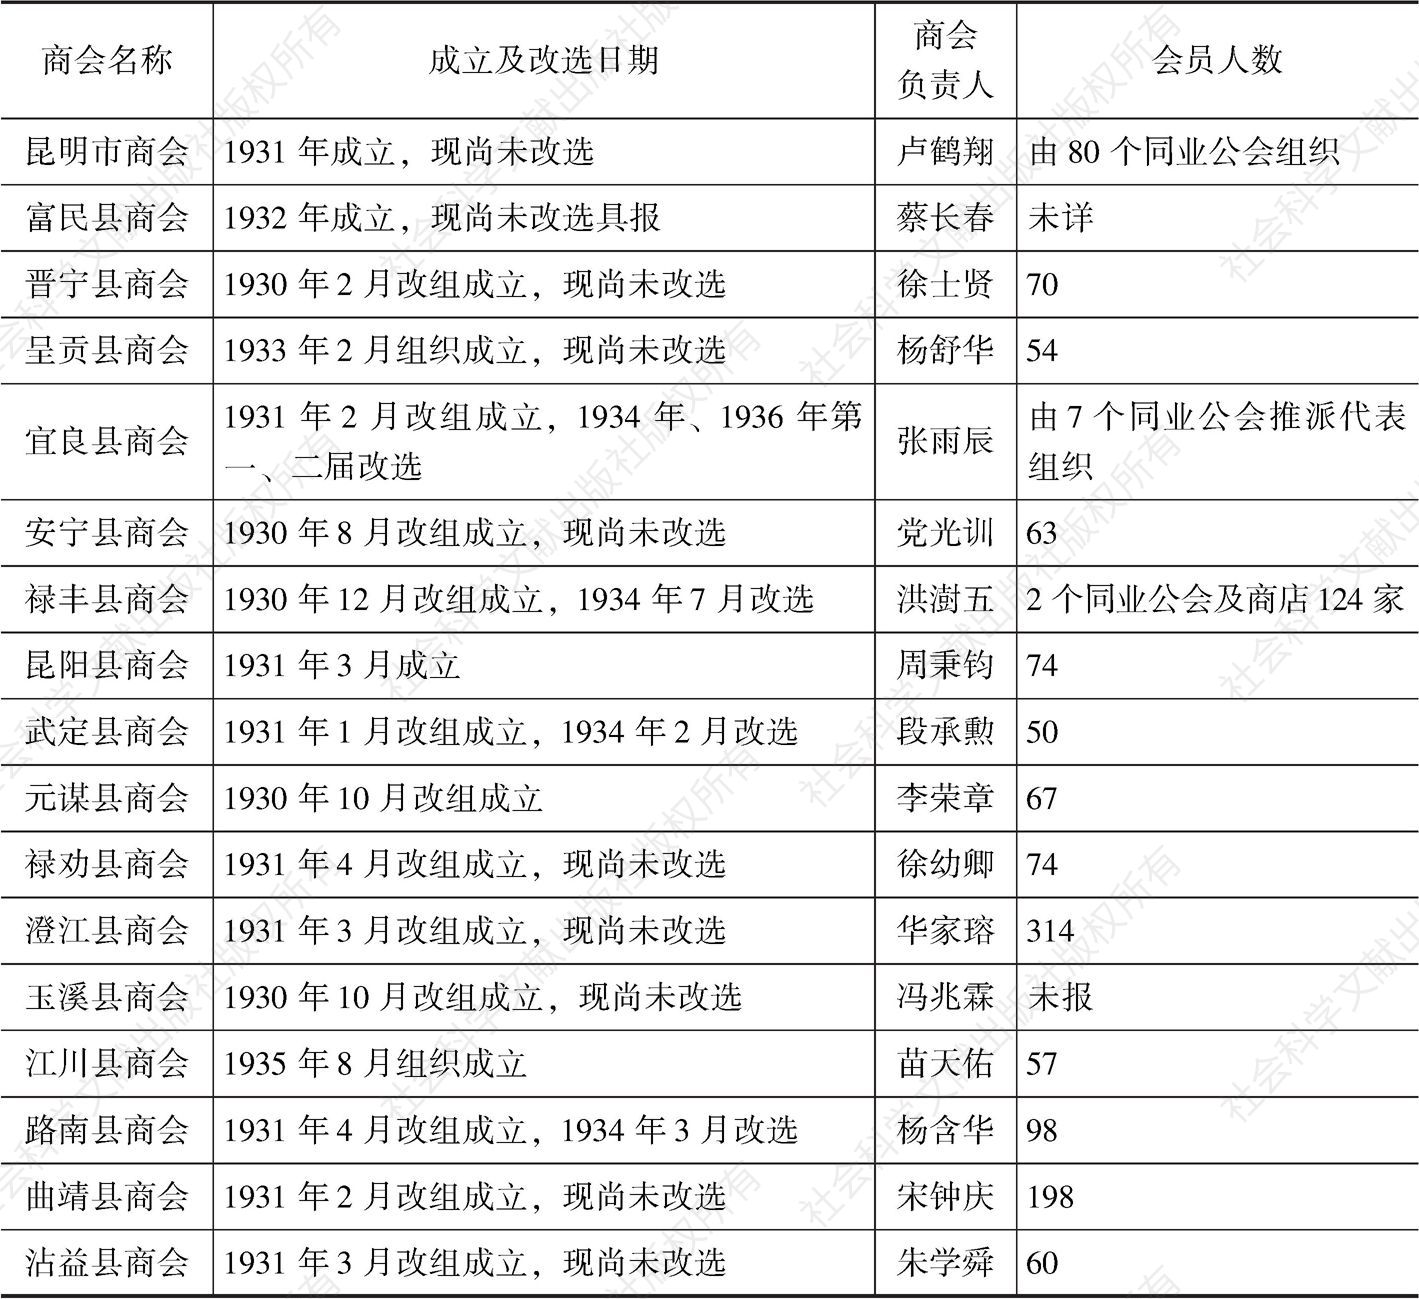 表3-1 1936年云南各地商会一览表